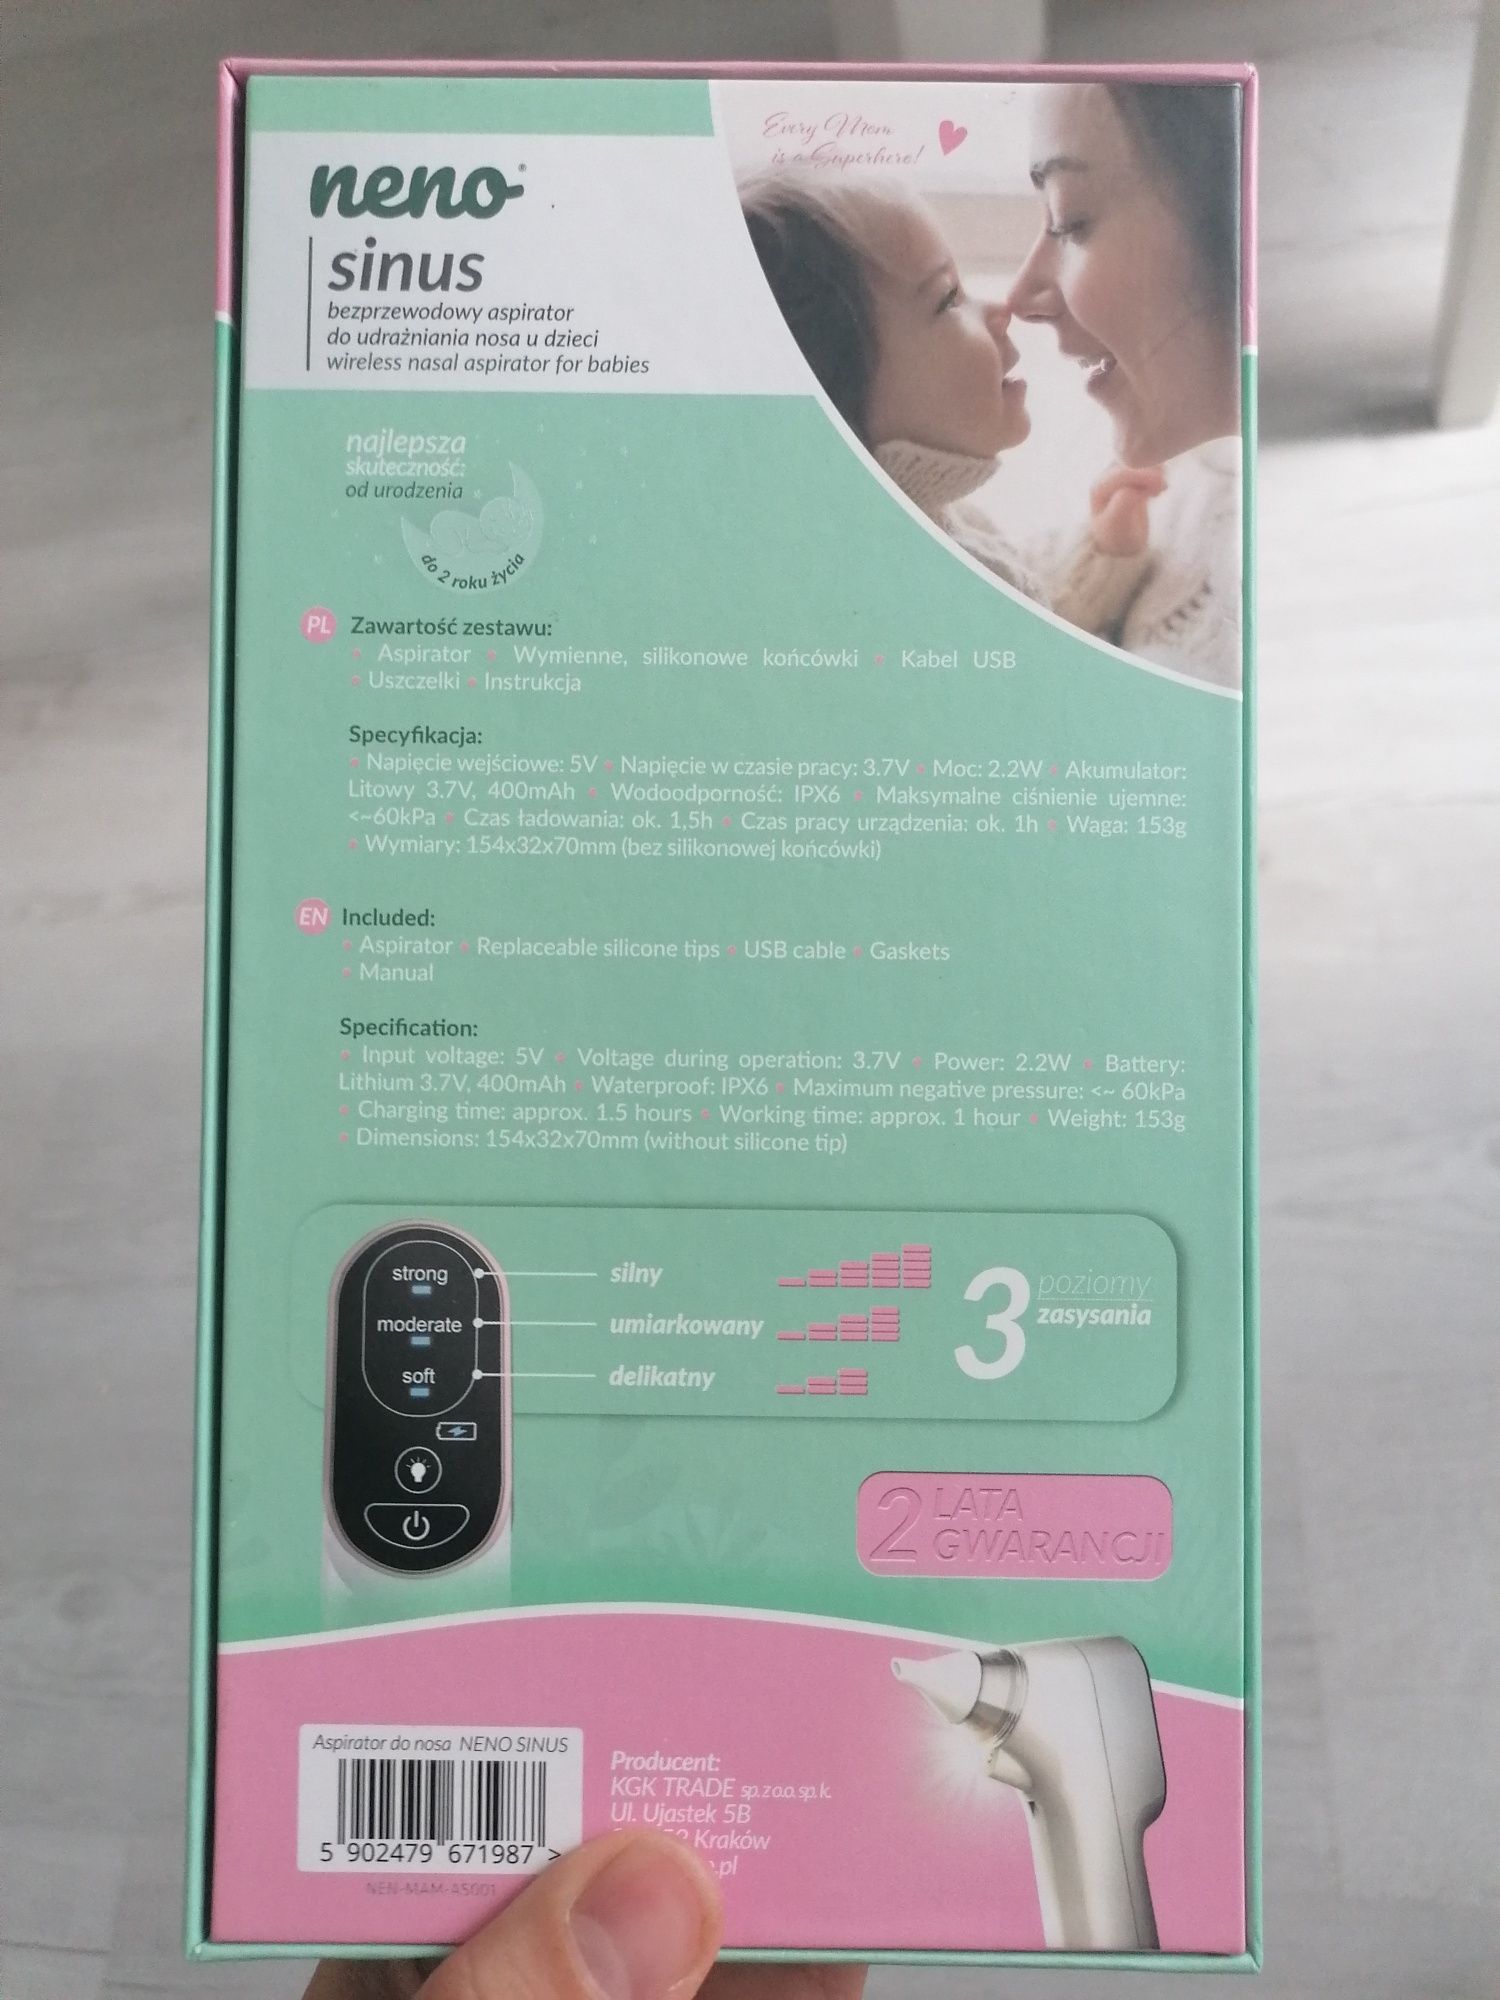 Neno sinus bezprzewodowy aspirator do nosa dla dzieci niemowlaków